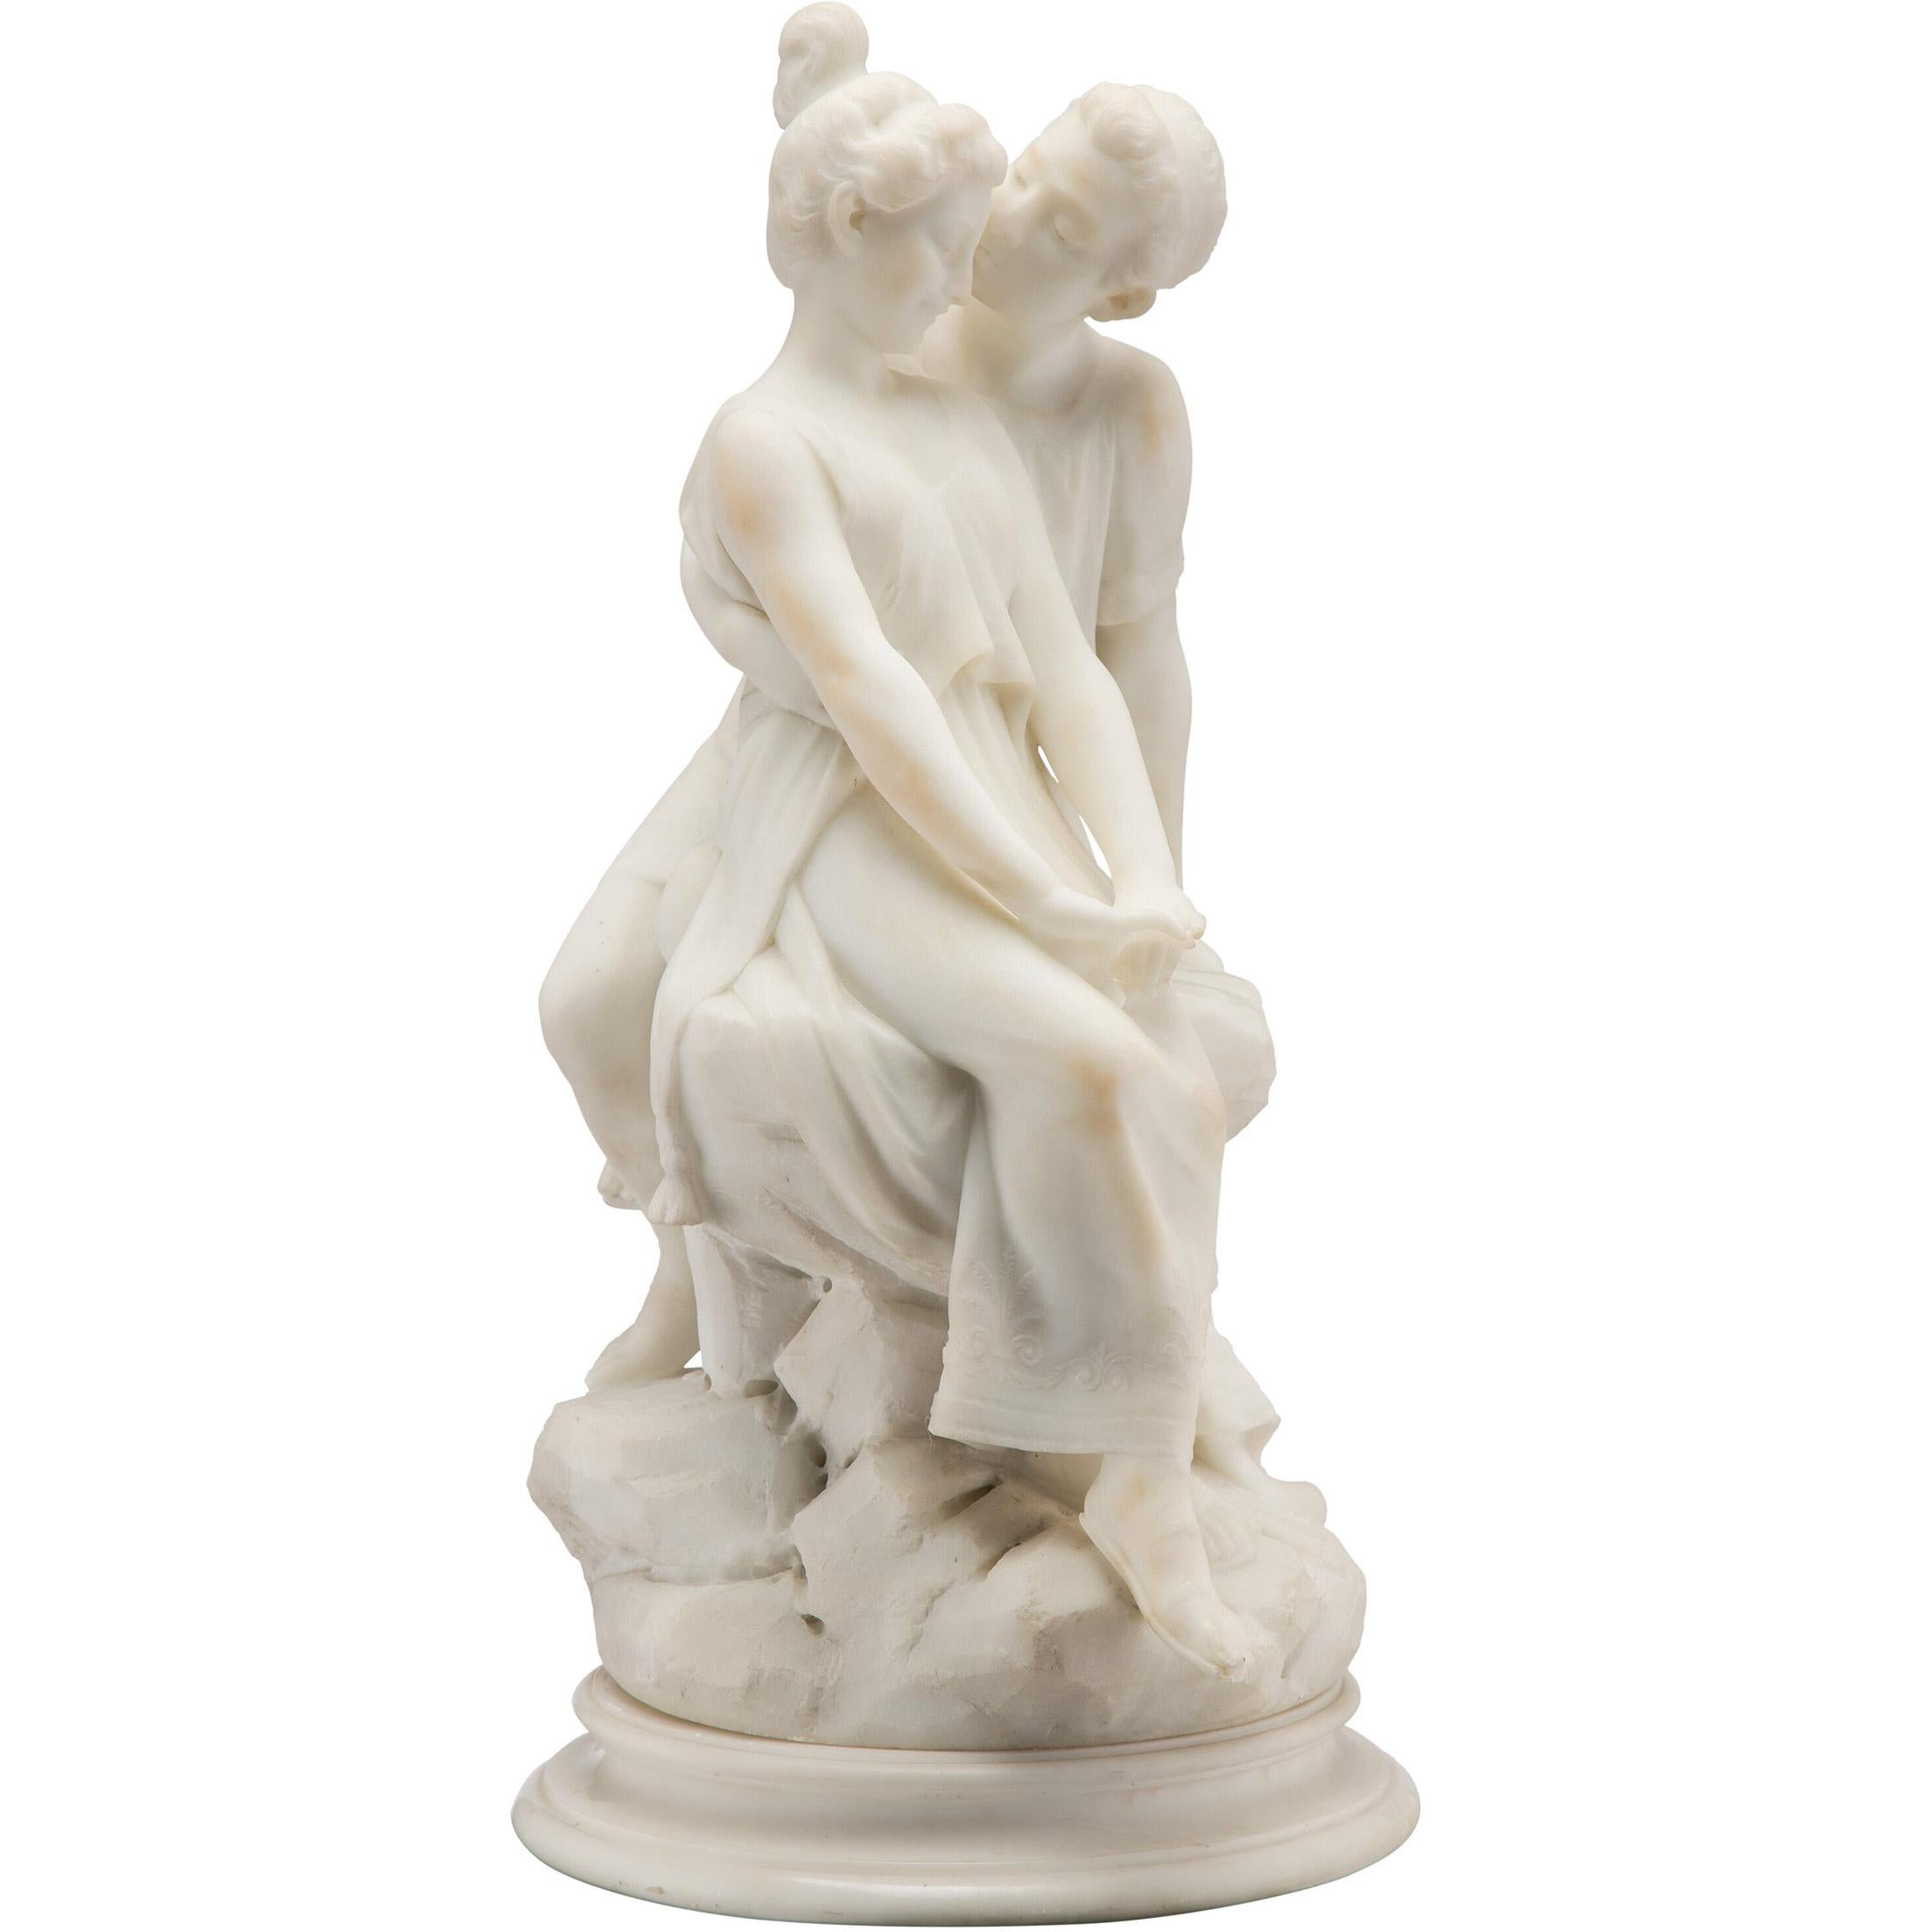 La sculpture italienne en marbre blanc finement moulée représentant des amoureux, surmontée d'une base ronde en marbre, est signée 